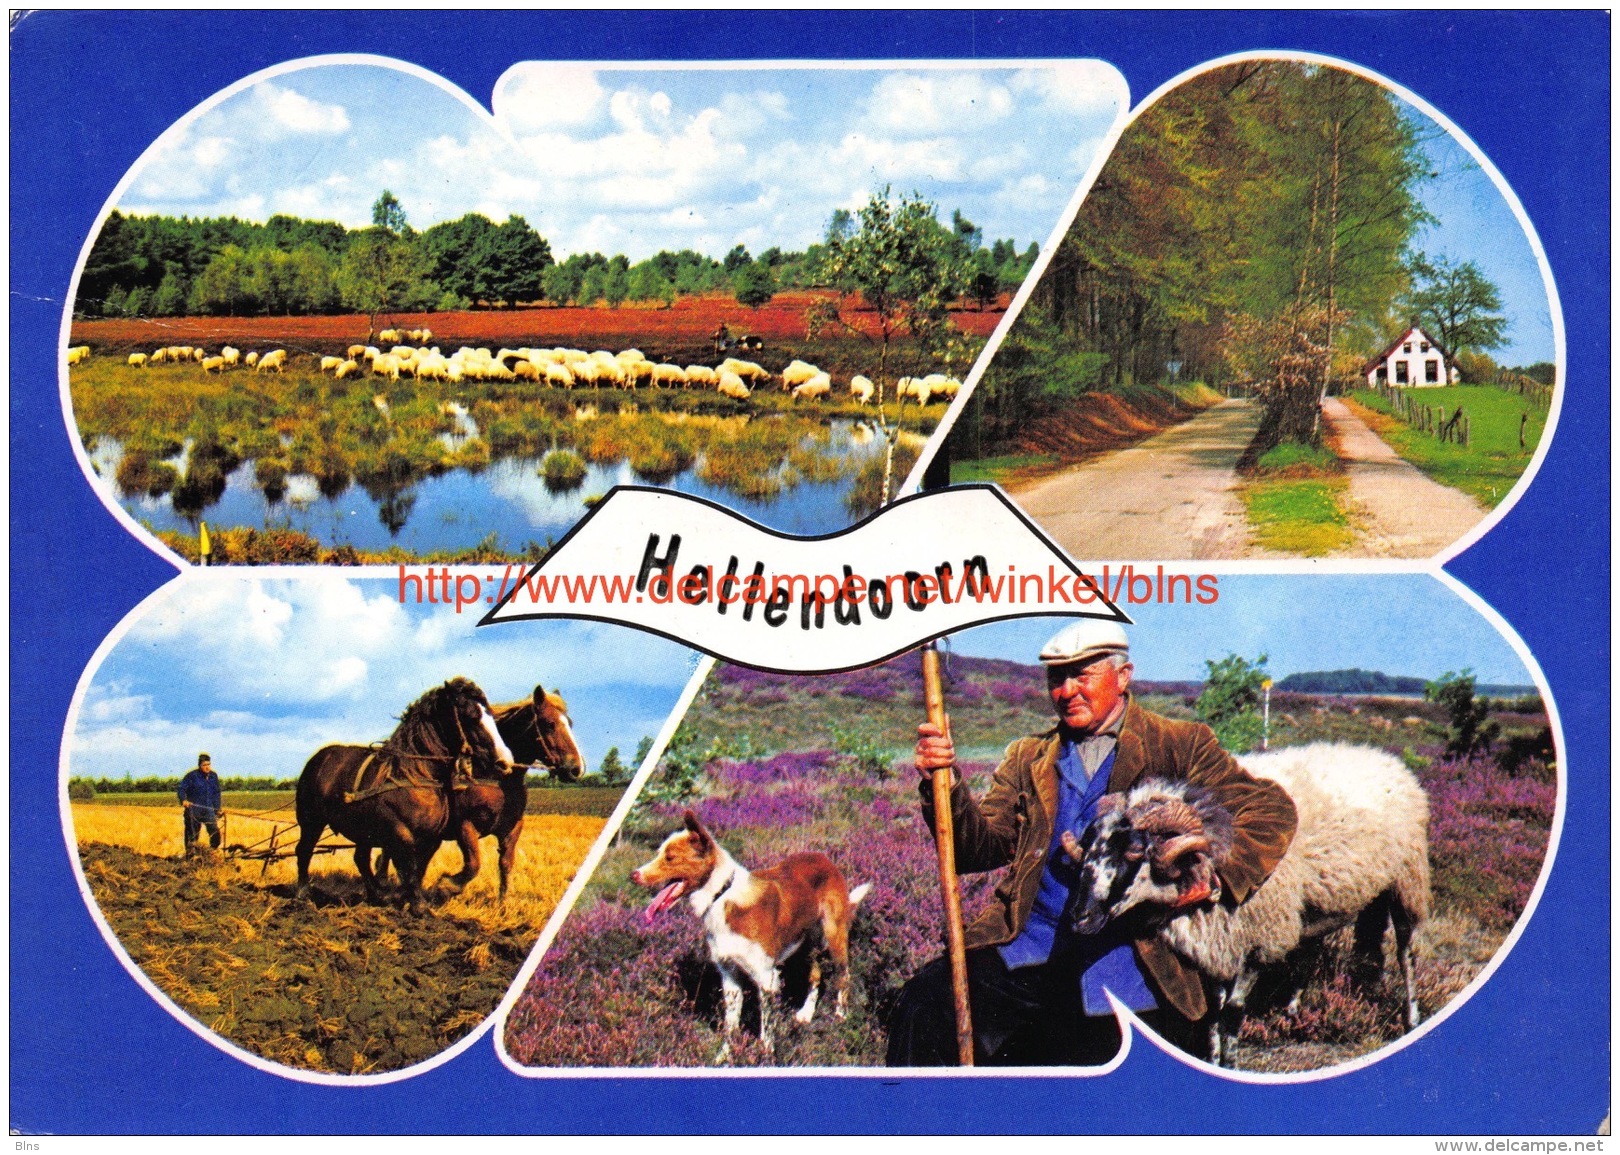 Hellendoorn - Hellendoorn